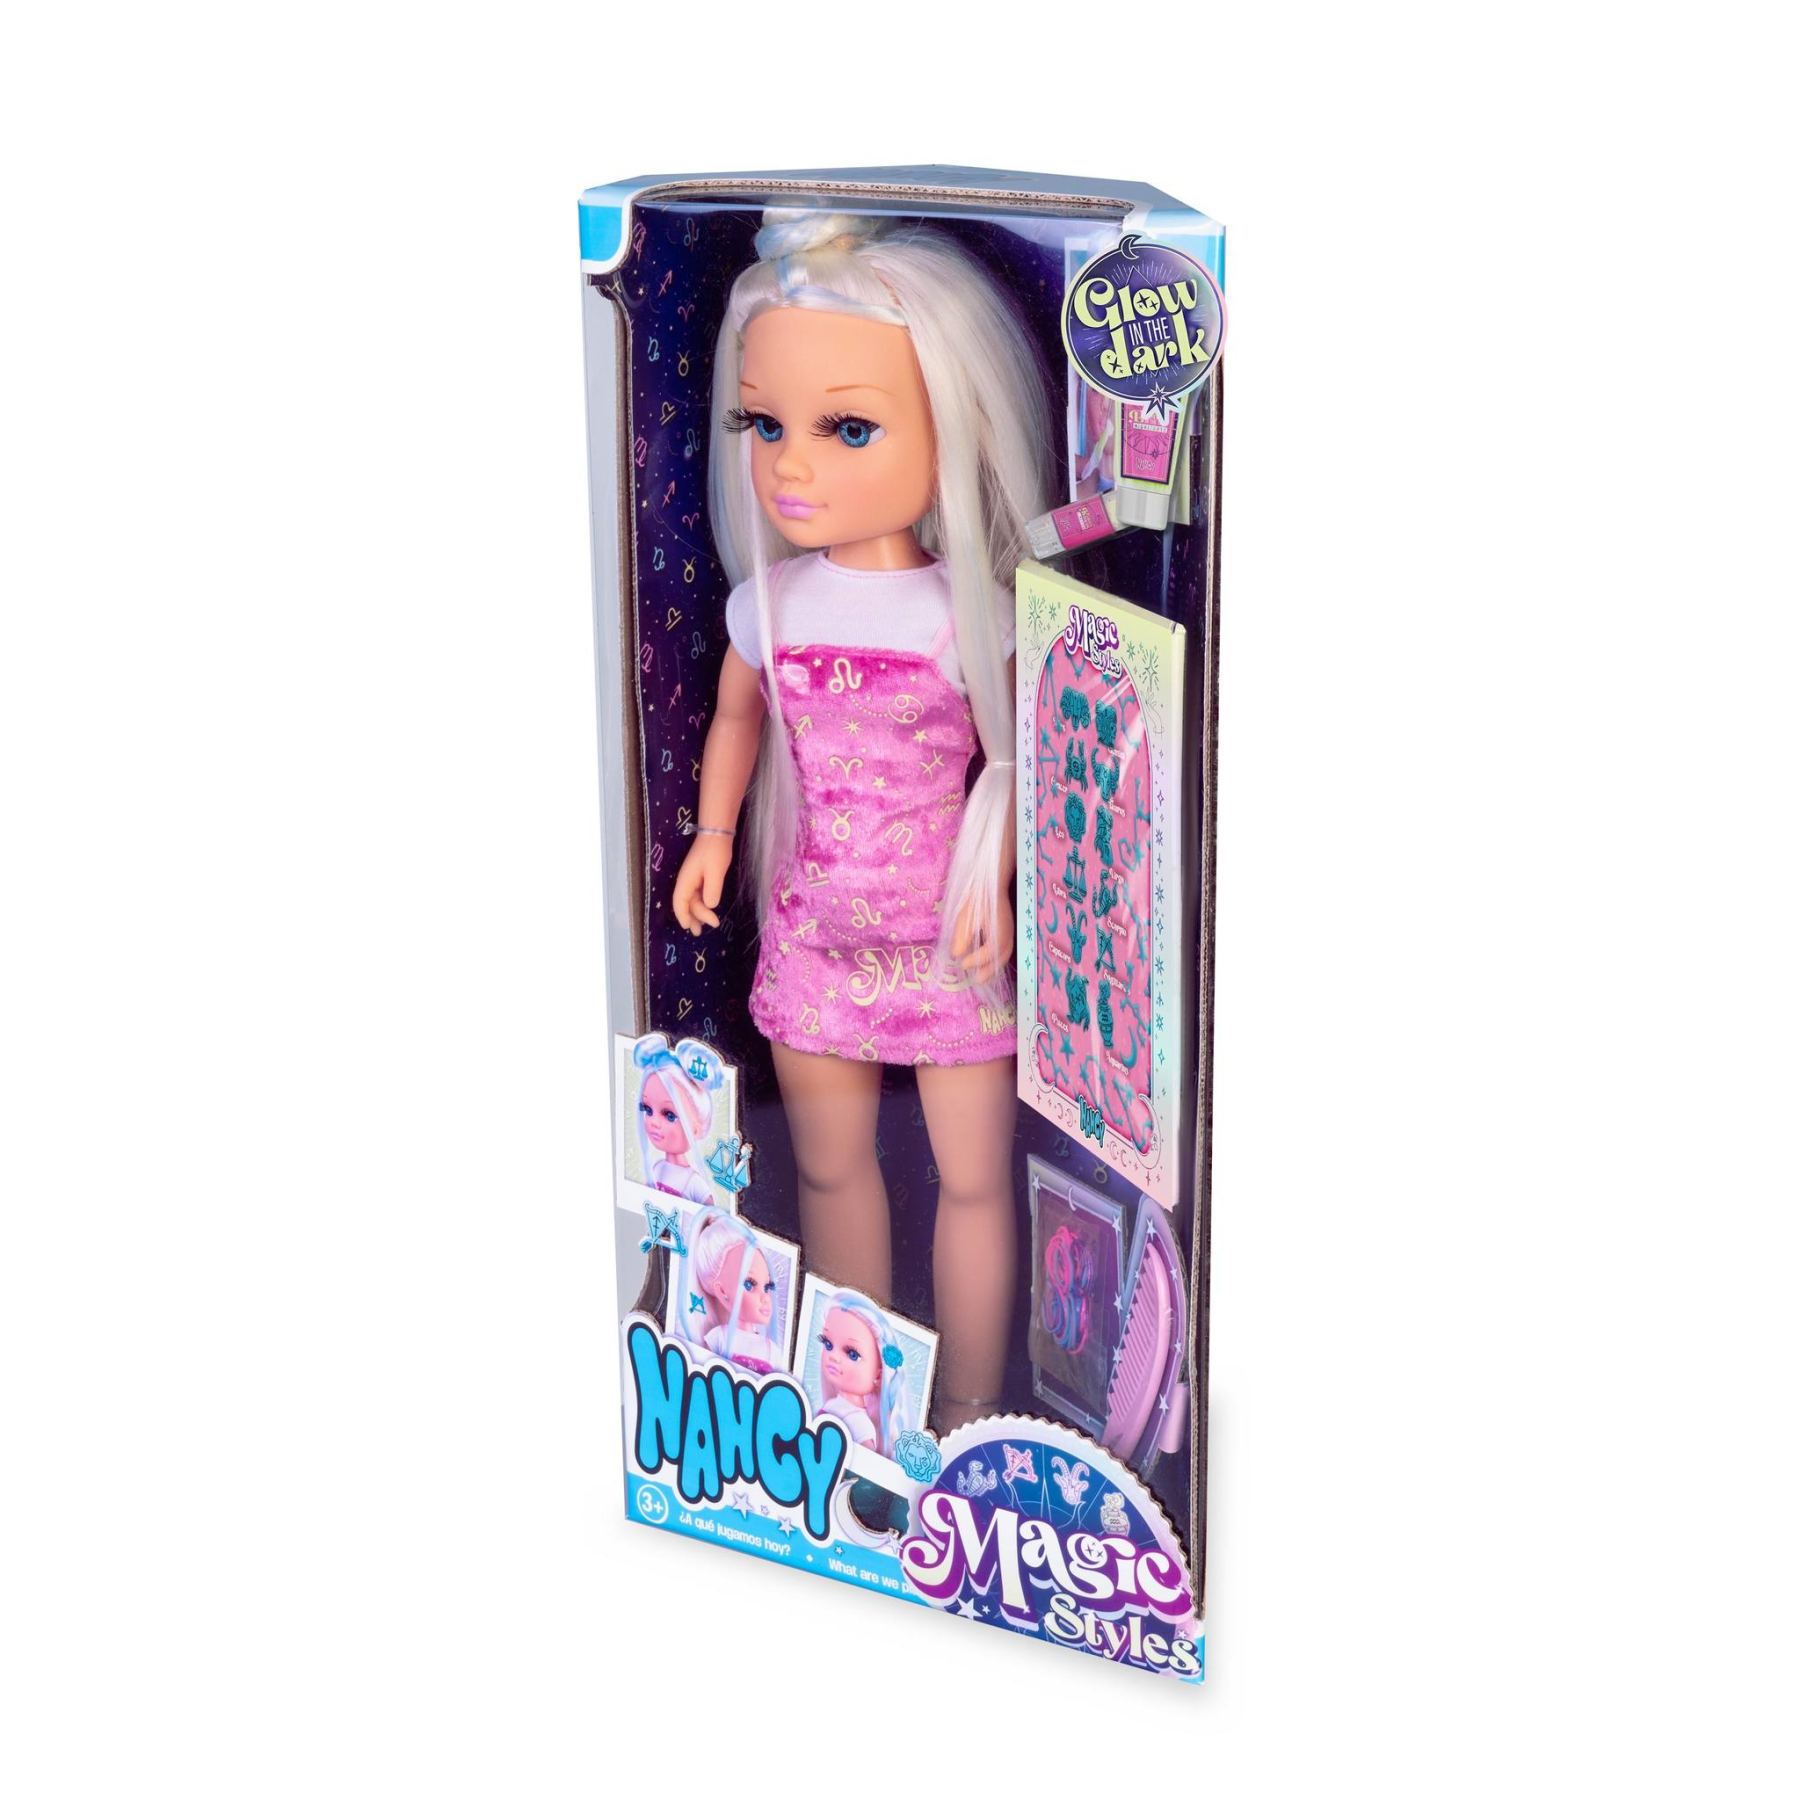 Nancy magic style, bambola nancy da 42 cm con accessori che brillano al buio. per bambine/i dai 3 anni. - NANCY